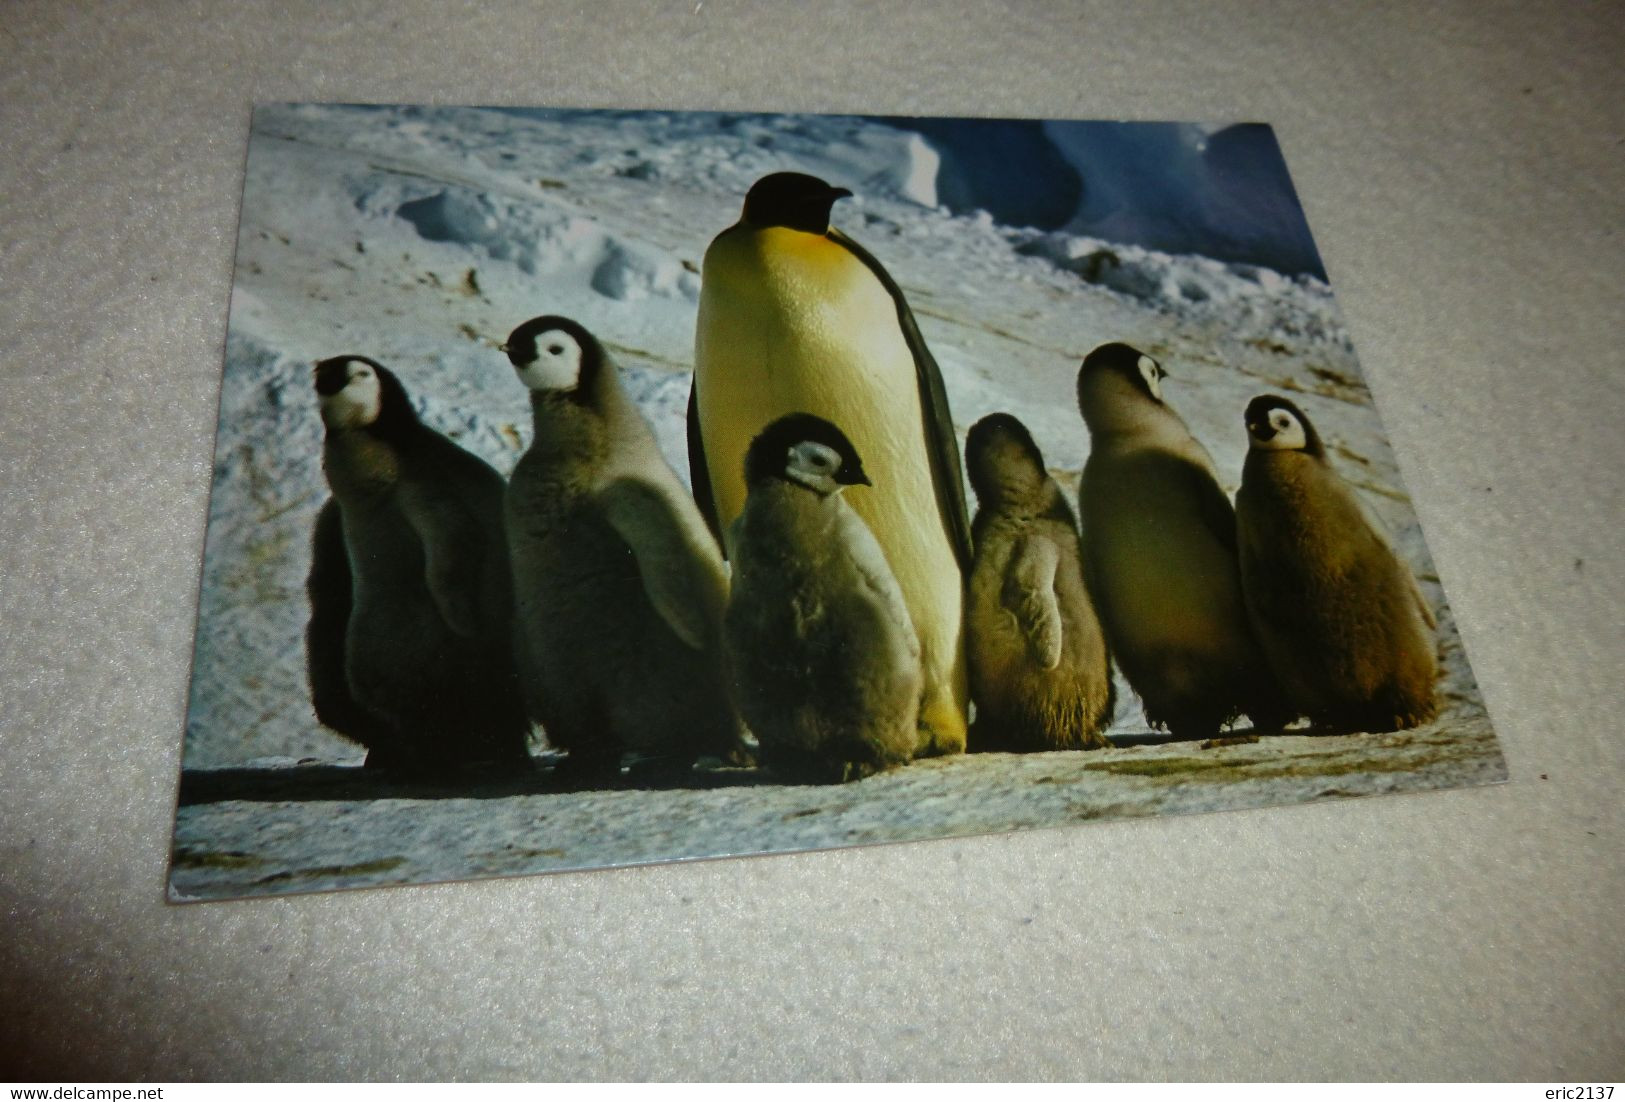 BELLE CARTE..MS POLAR BJORN 1986-1987... ..PHOTO R. GUILLARD MANCHOT EMPEREUR ET OUSSINS - TAAF : Terres Australes Antarctiques Françaises